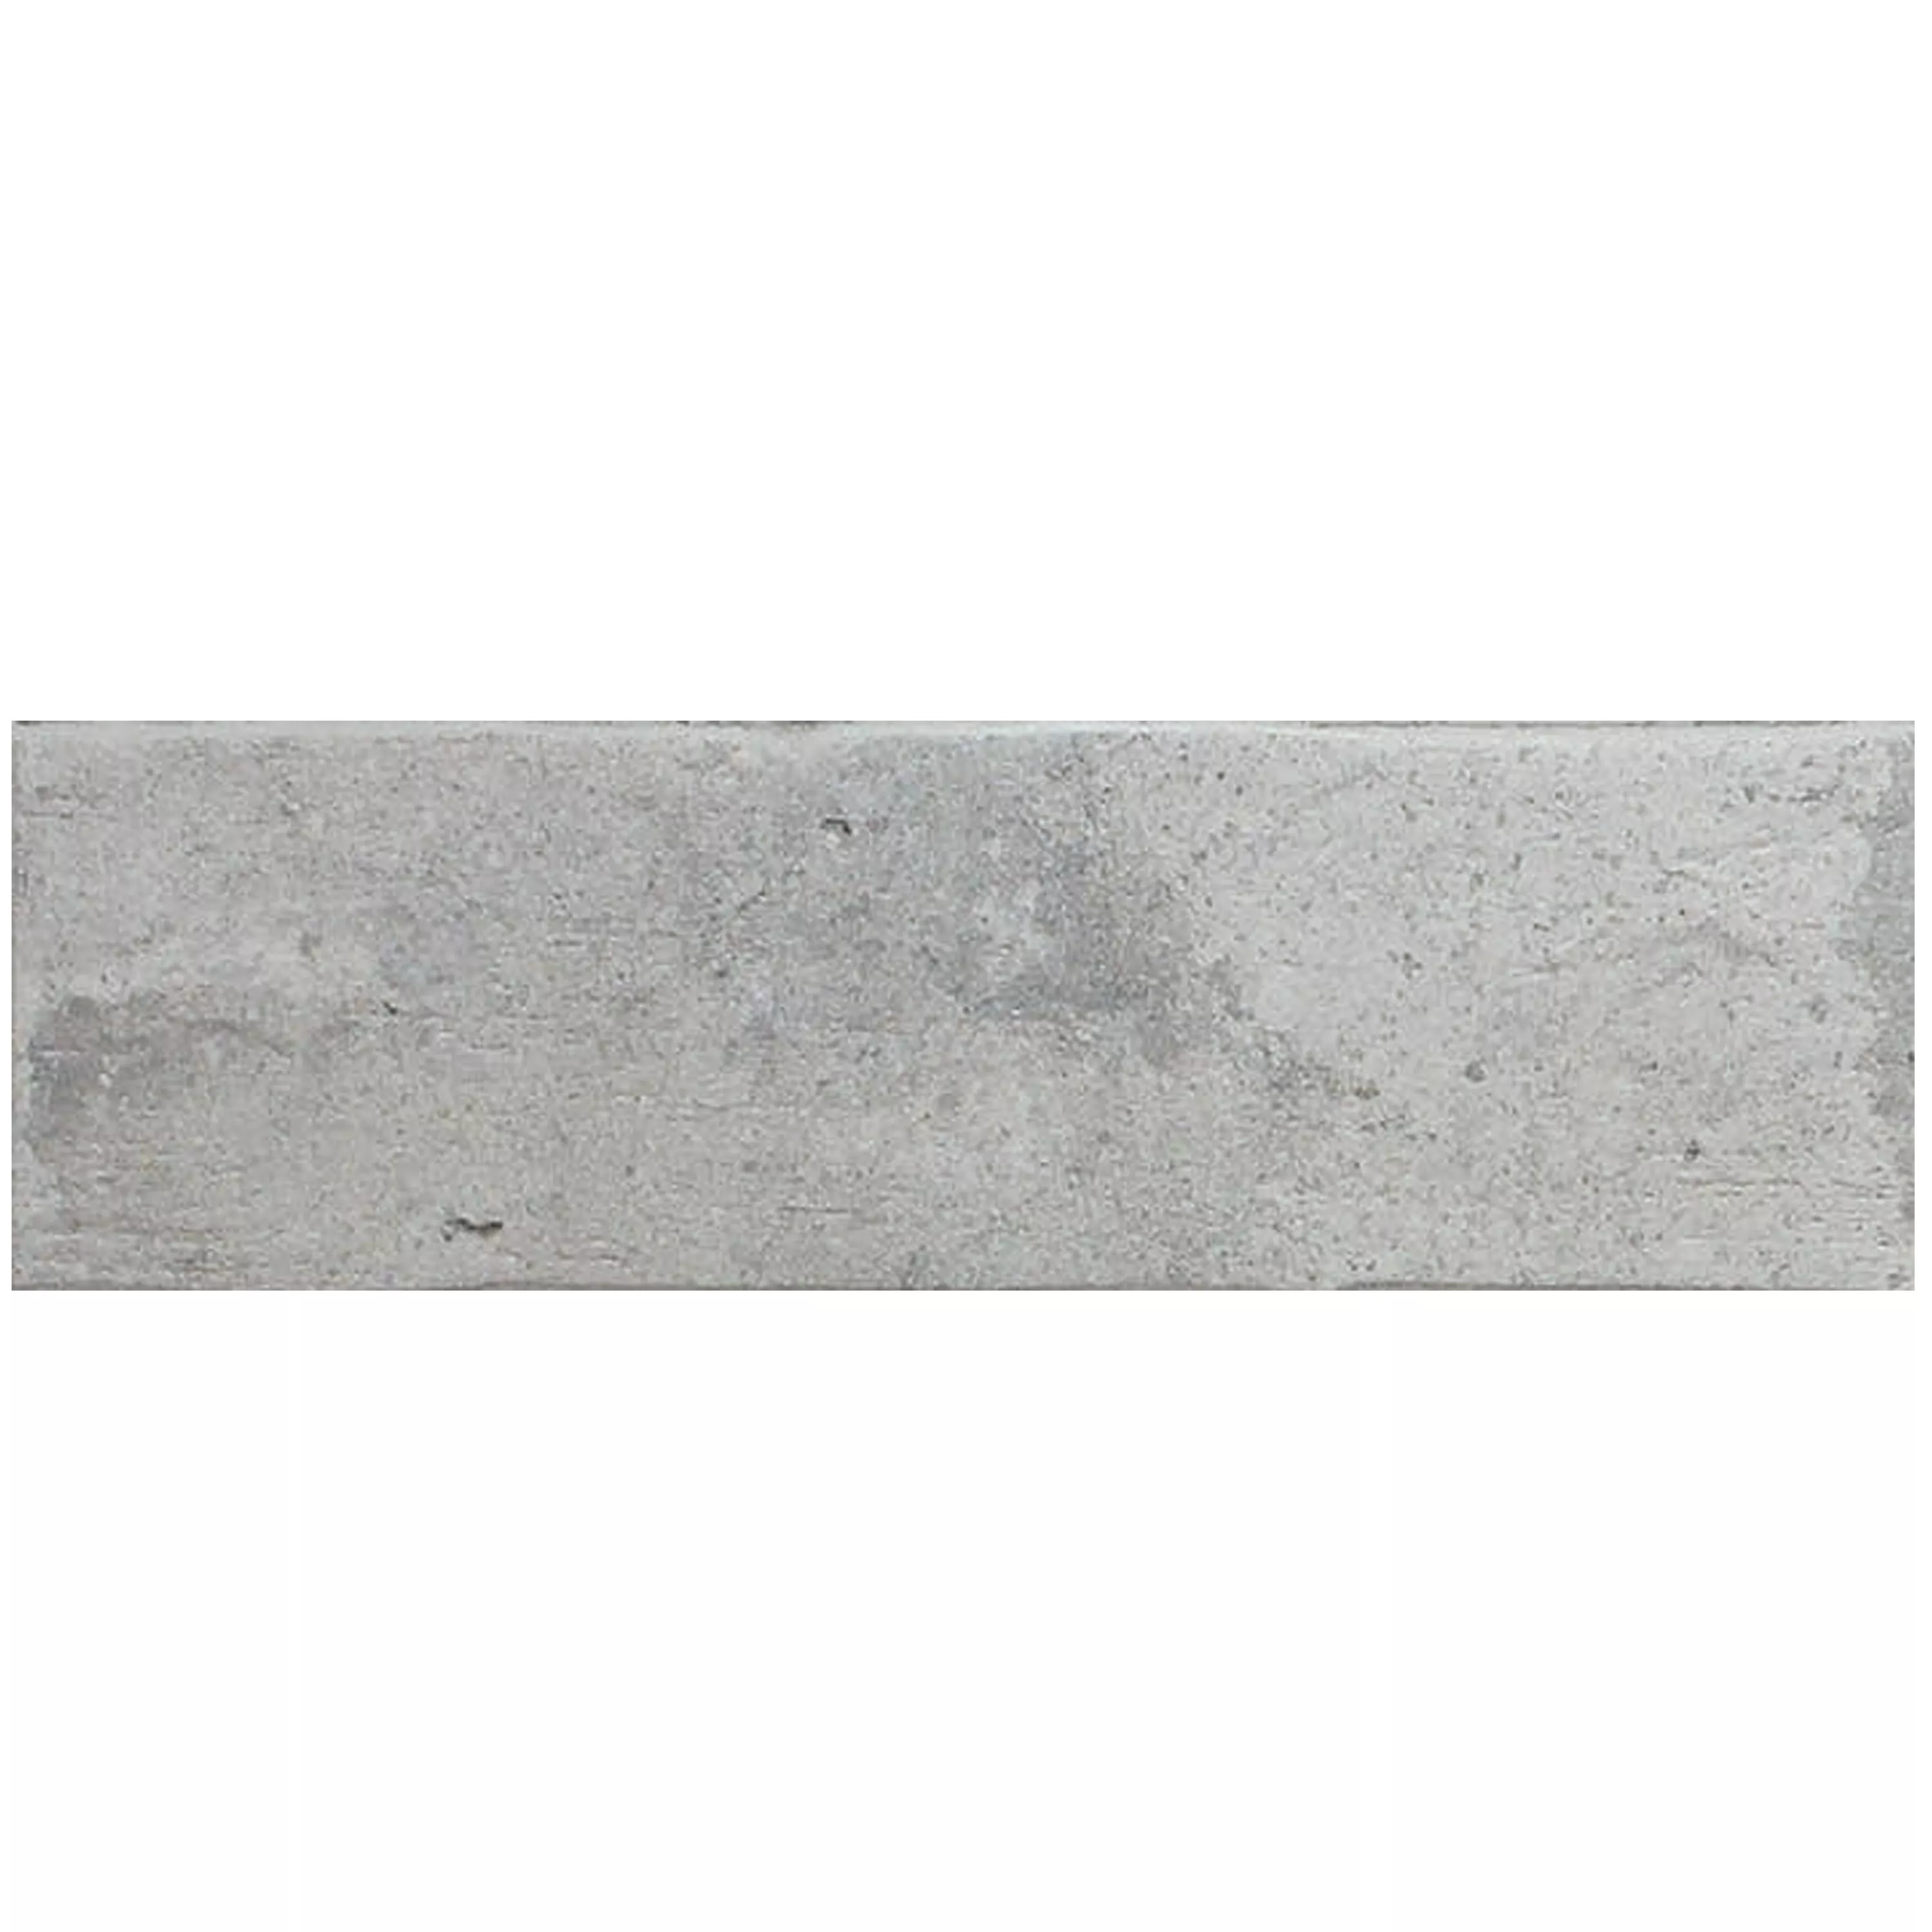 Sample Wall Tiles Leverkusen 7,1x24cm Straps Light Grey